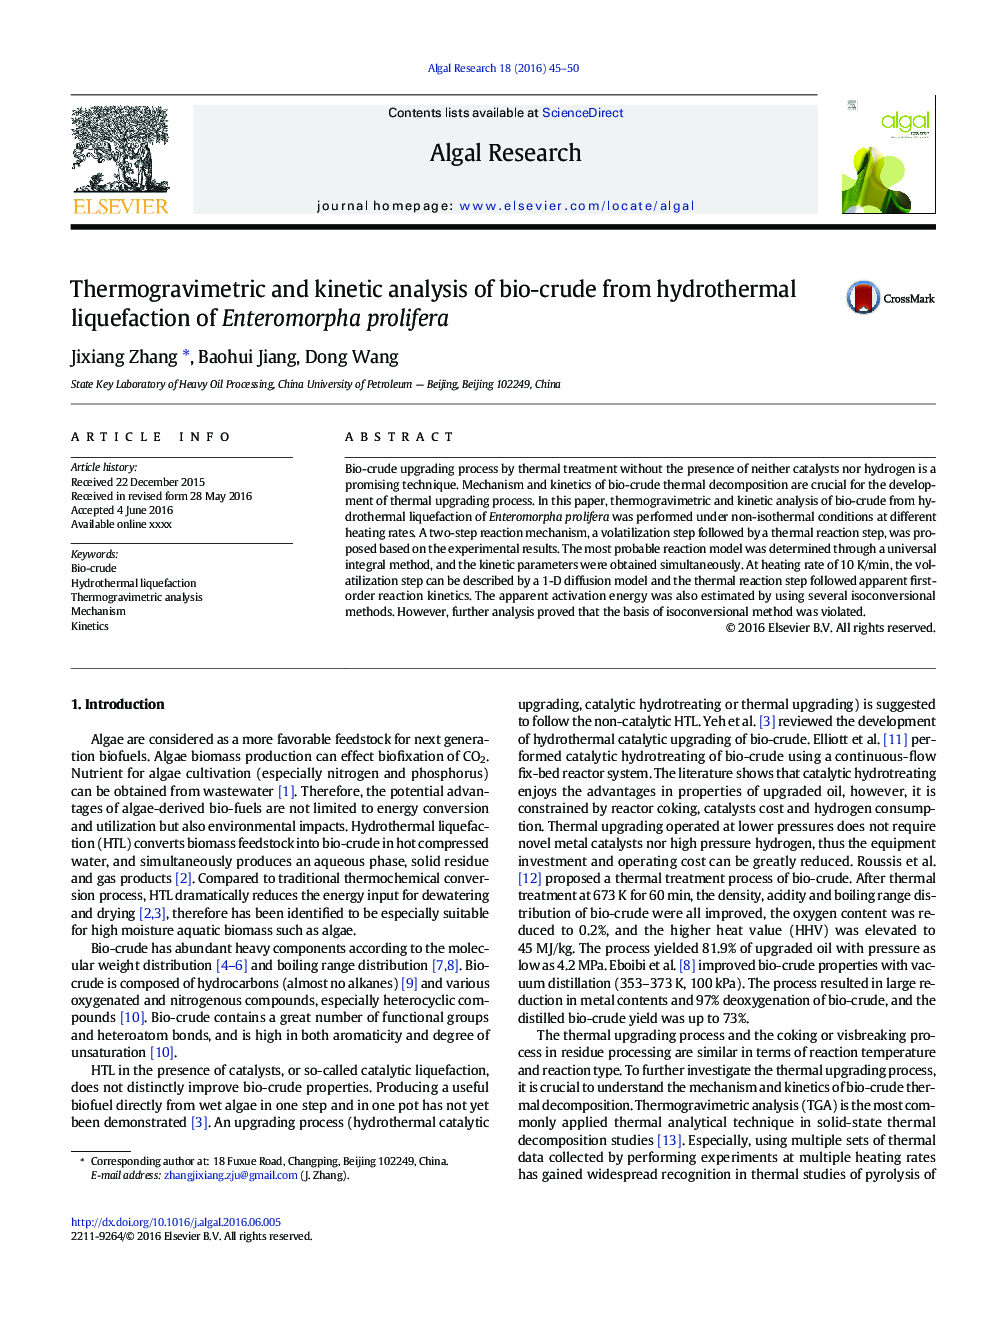 تجزیه و تحلیل ترموگرامتری و جنبشی بیولوژیکی از روانکاری هیدروترمال انتروپارفال پرویفر 